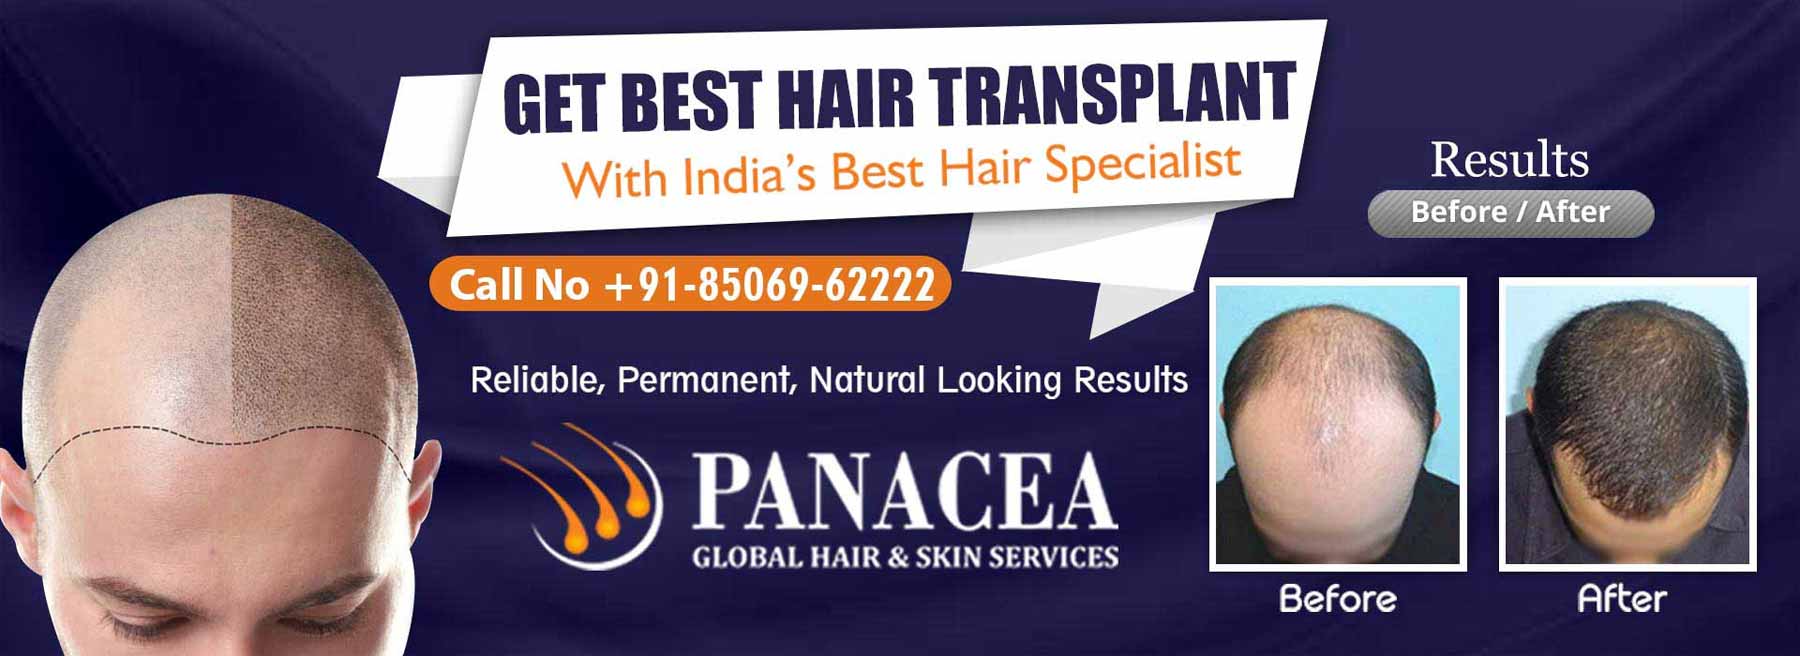 Get Best Hair Transplant - Panacea Global in Okhla